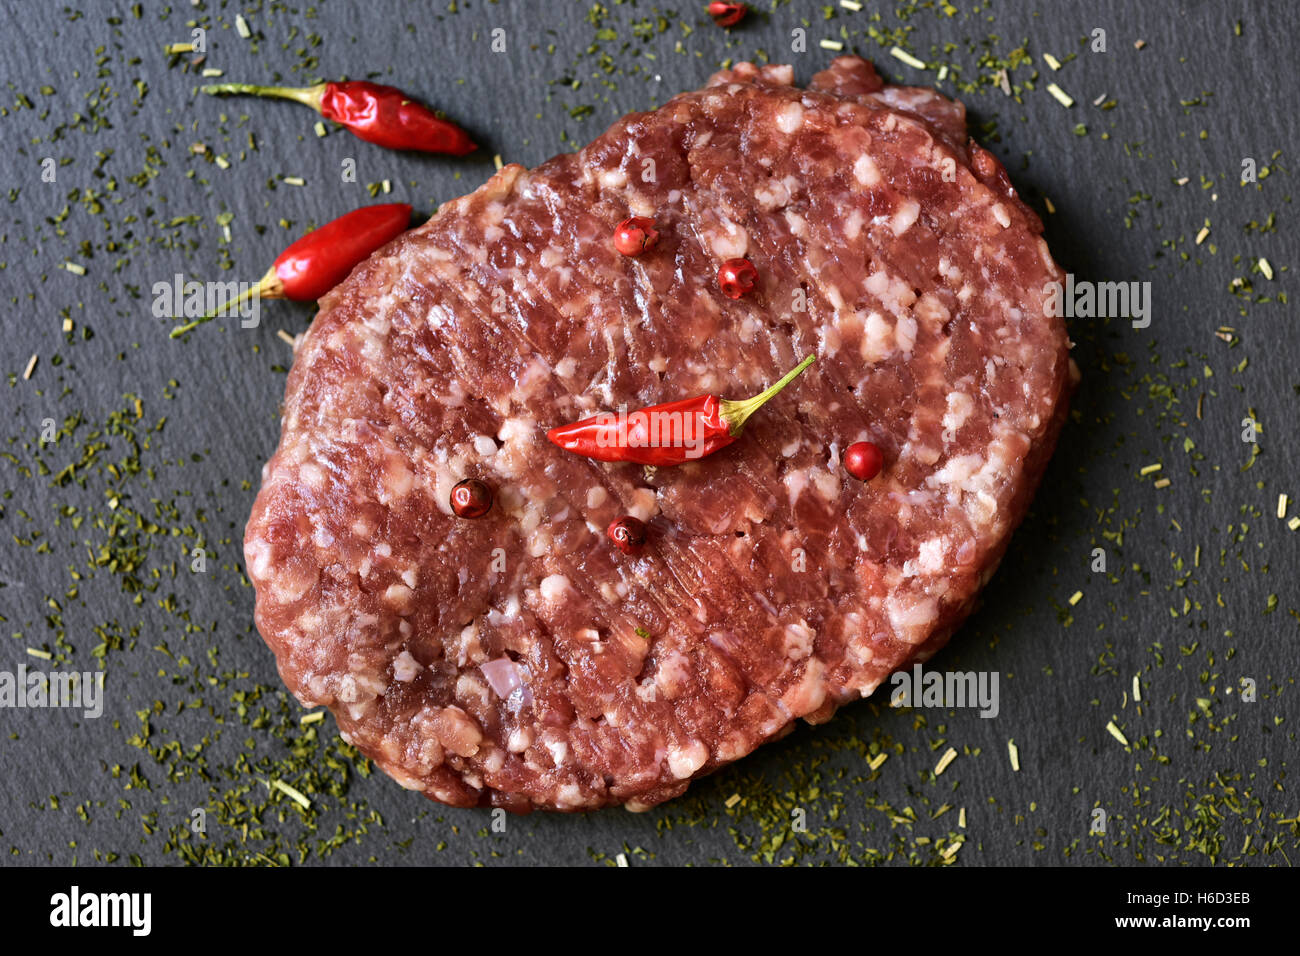 Primer plano de una hamburguesa cruda condimentada con pimienta roja, pimientos y hierbas en una superficie de pizarra Foto de stock